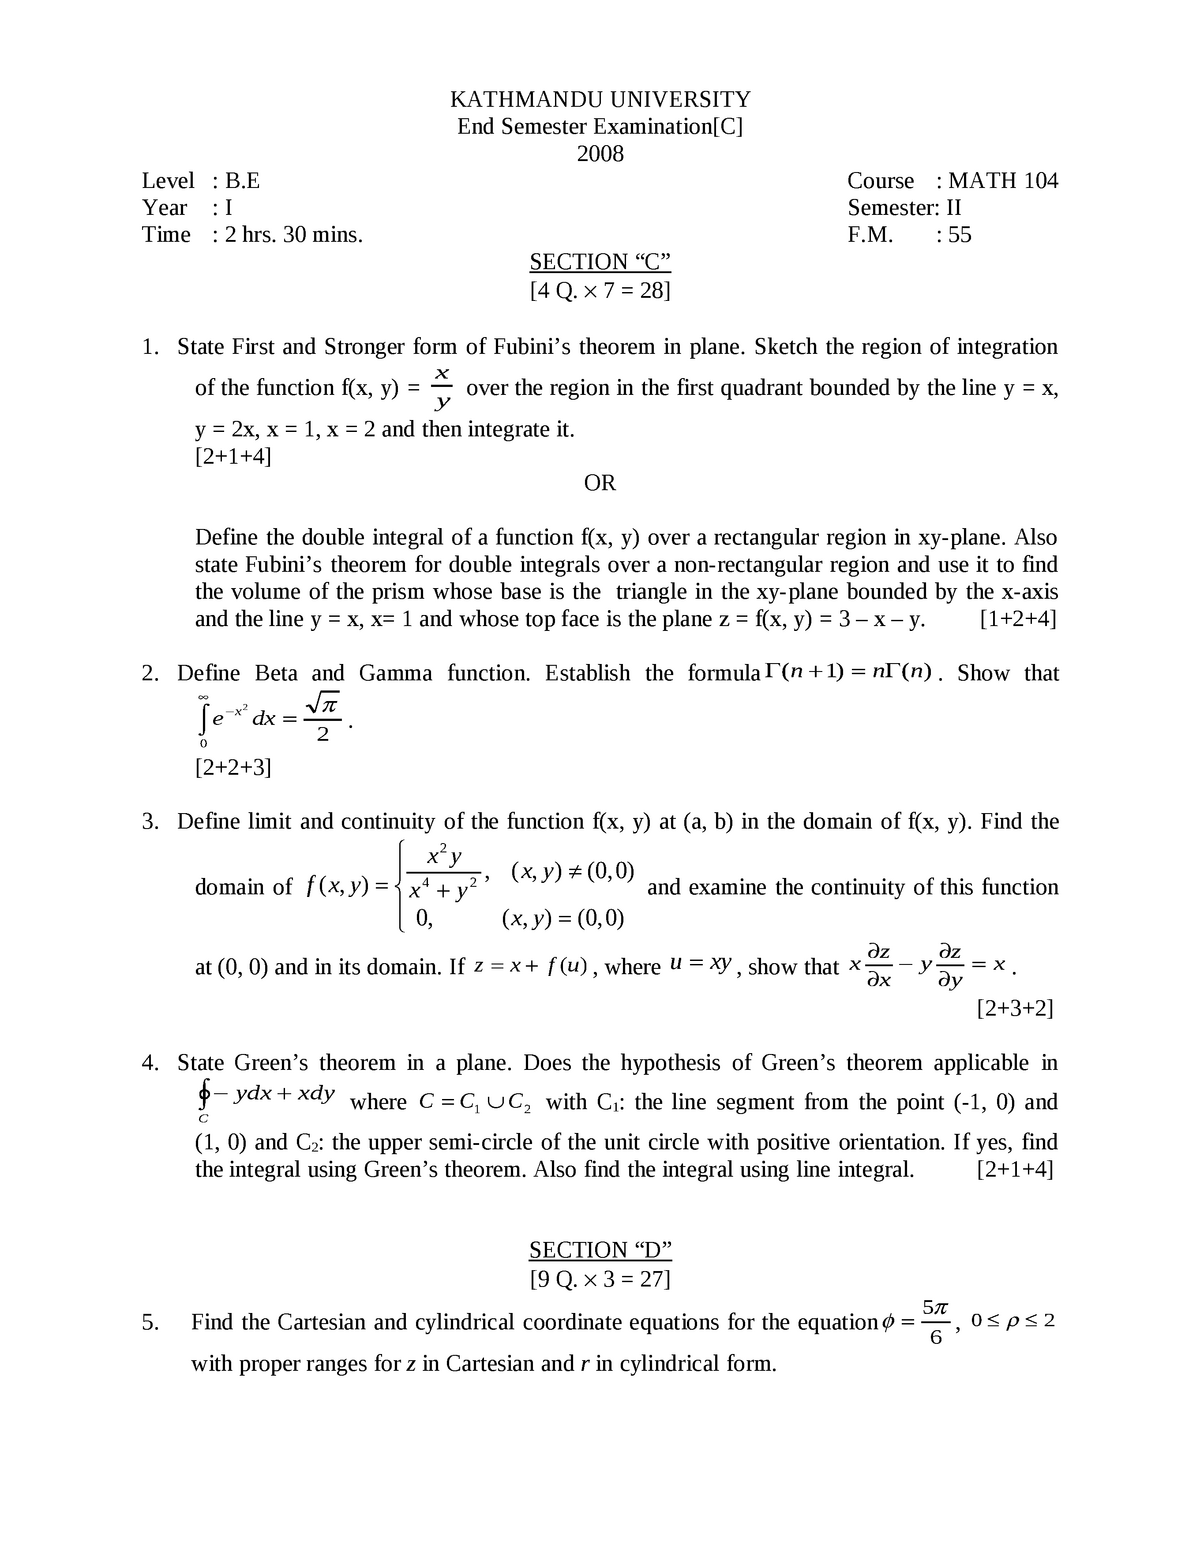 Math104 1 2 08 1 This Document Contains Posible Question About Linear Alzebra Kathmandu Studocu